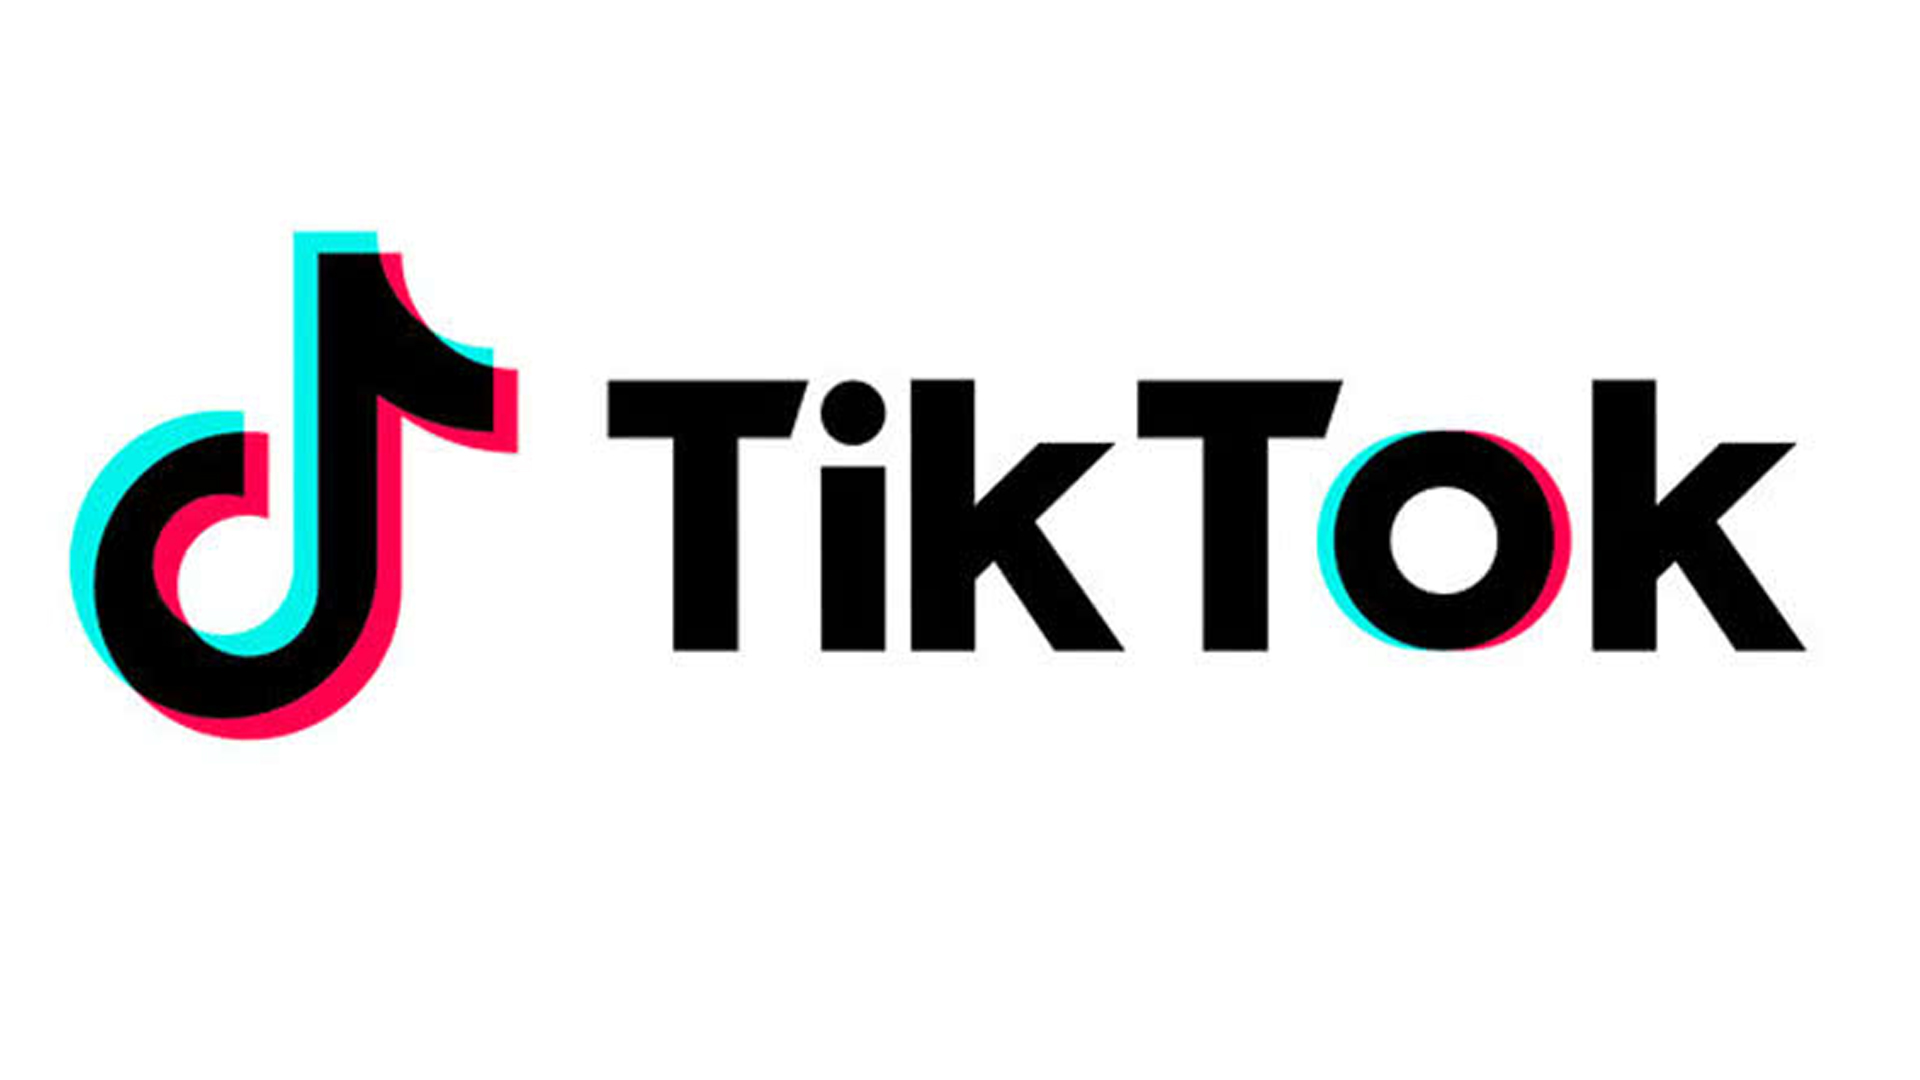 Apple закрив для росіян додаток TikTok